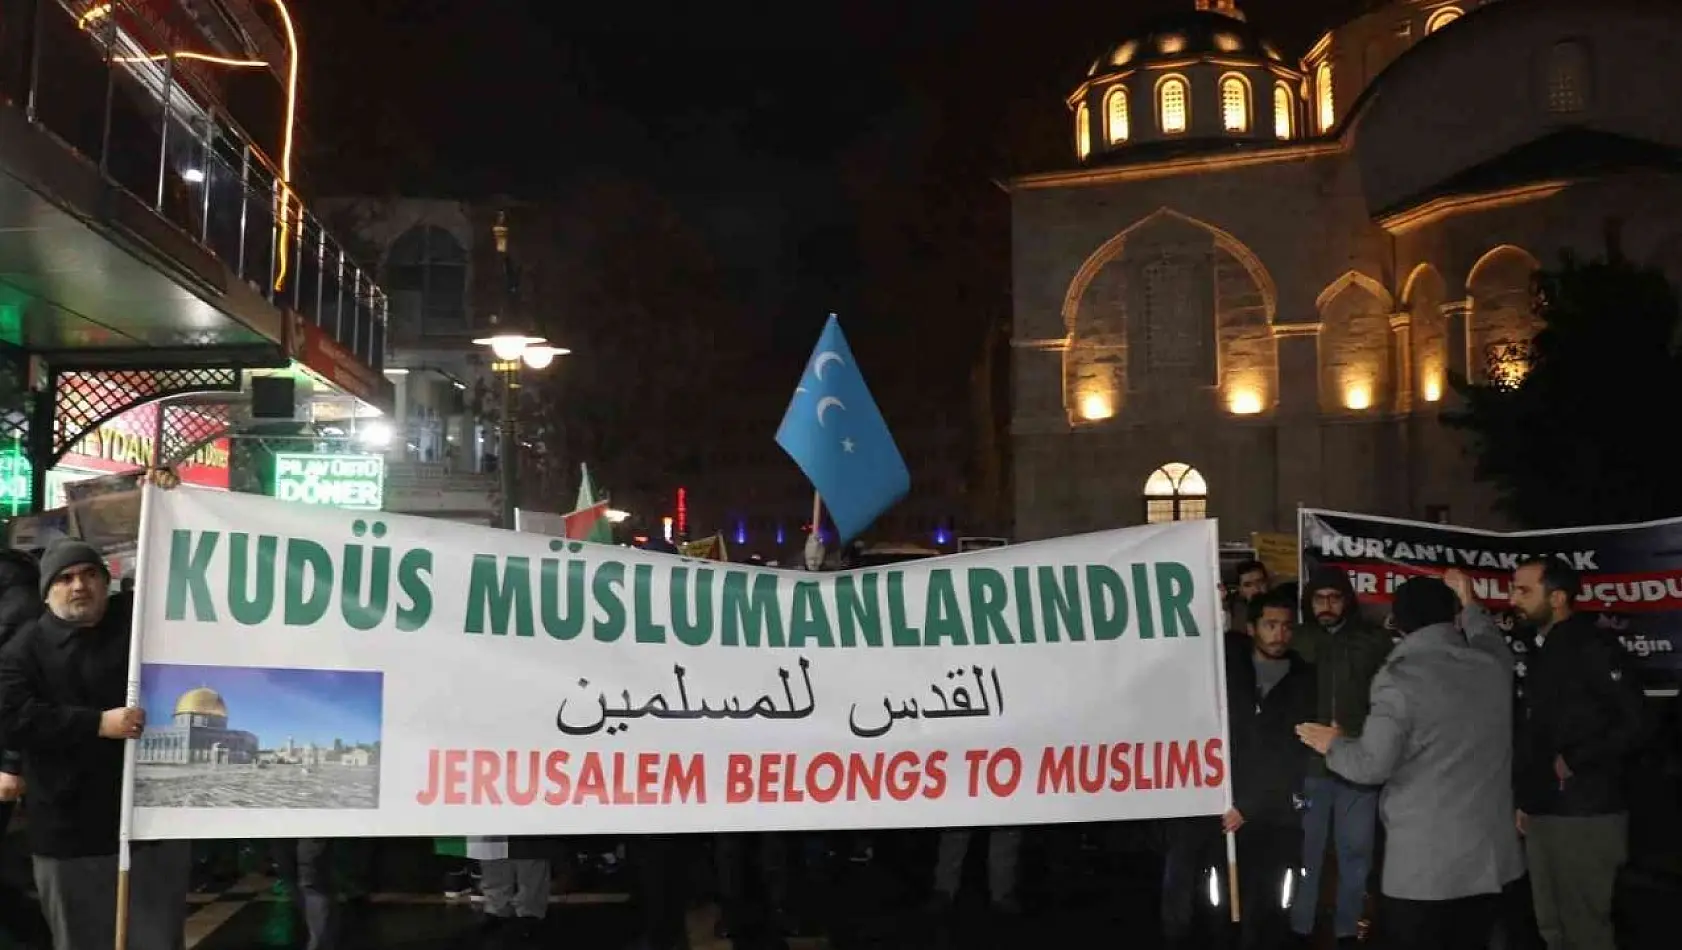 Malatyalılar Kur'an-ı Kerim yakılmasını protesto için yürüdü